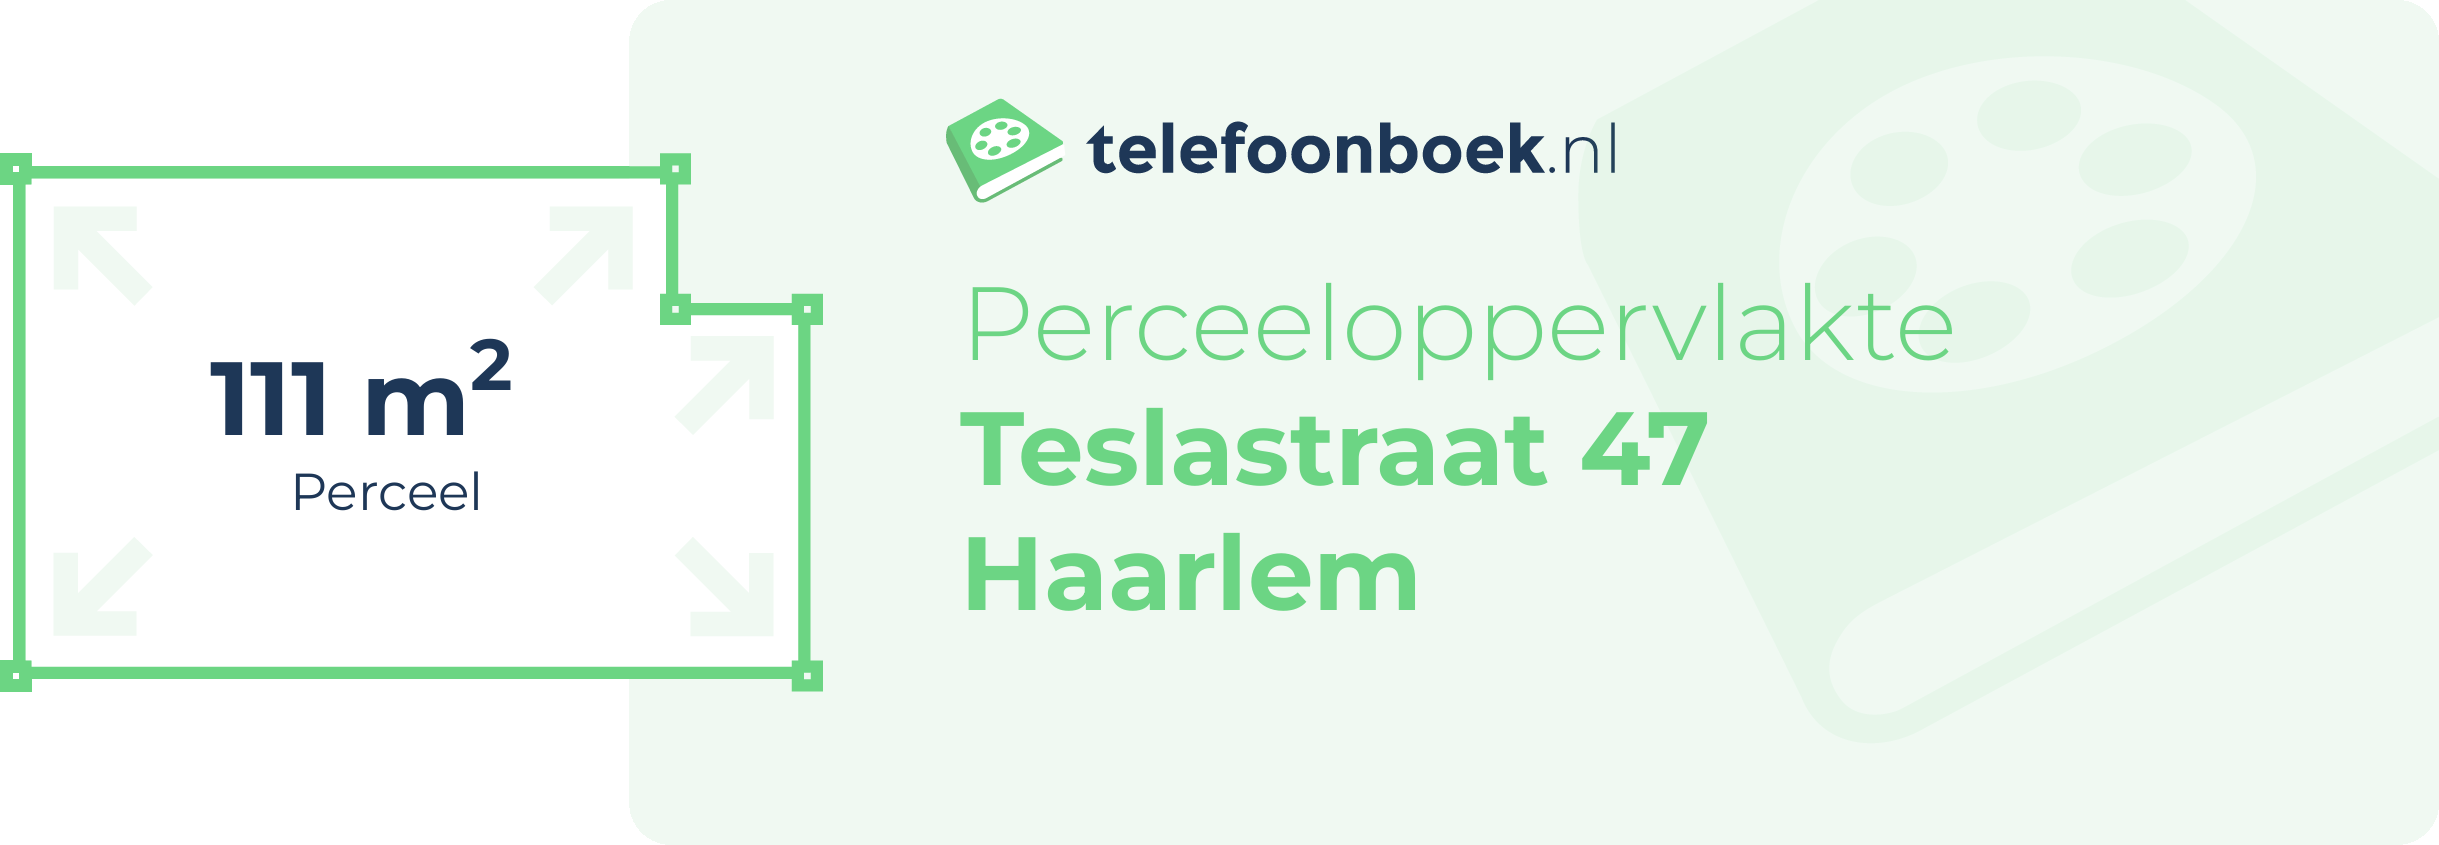 Perceeloppervlakte Teslastraat 47 Haarlem